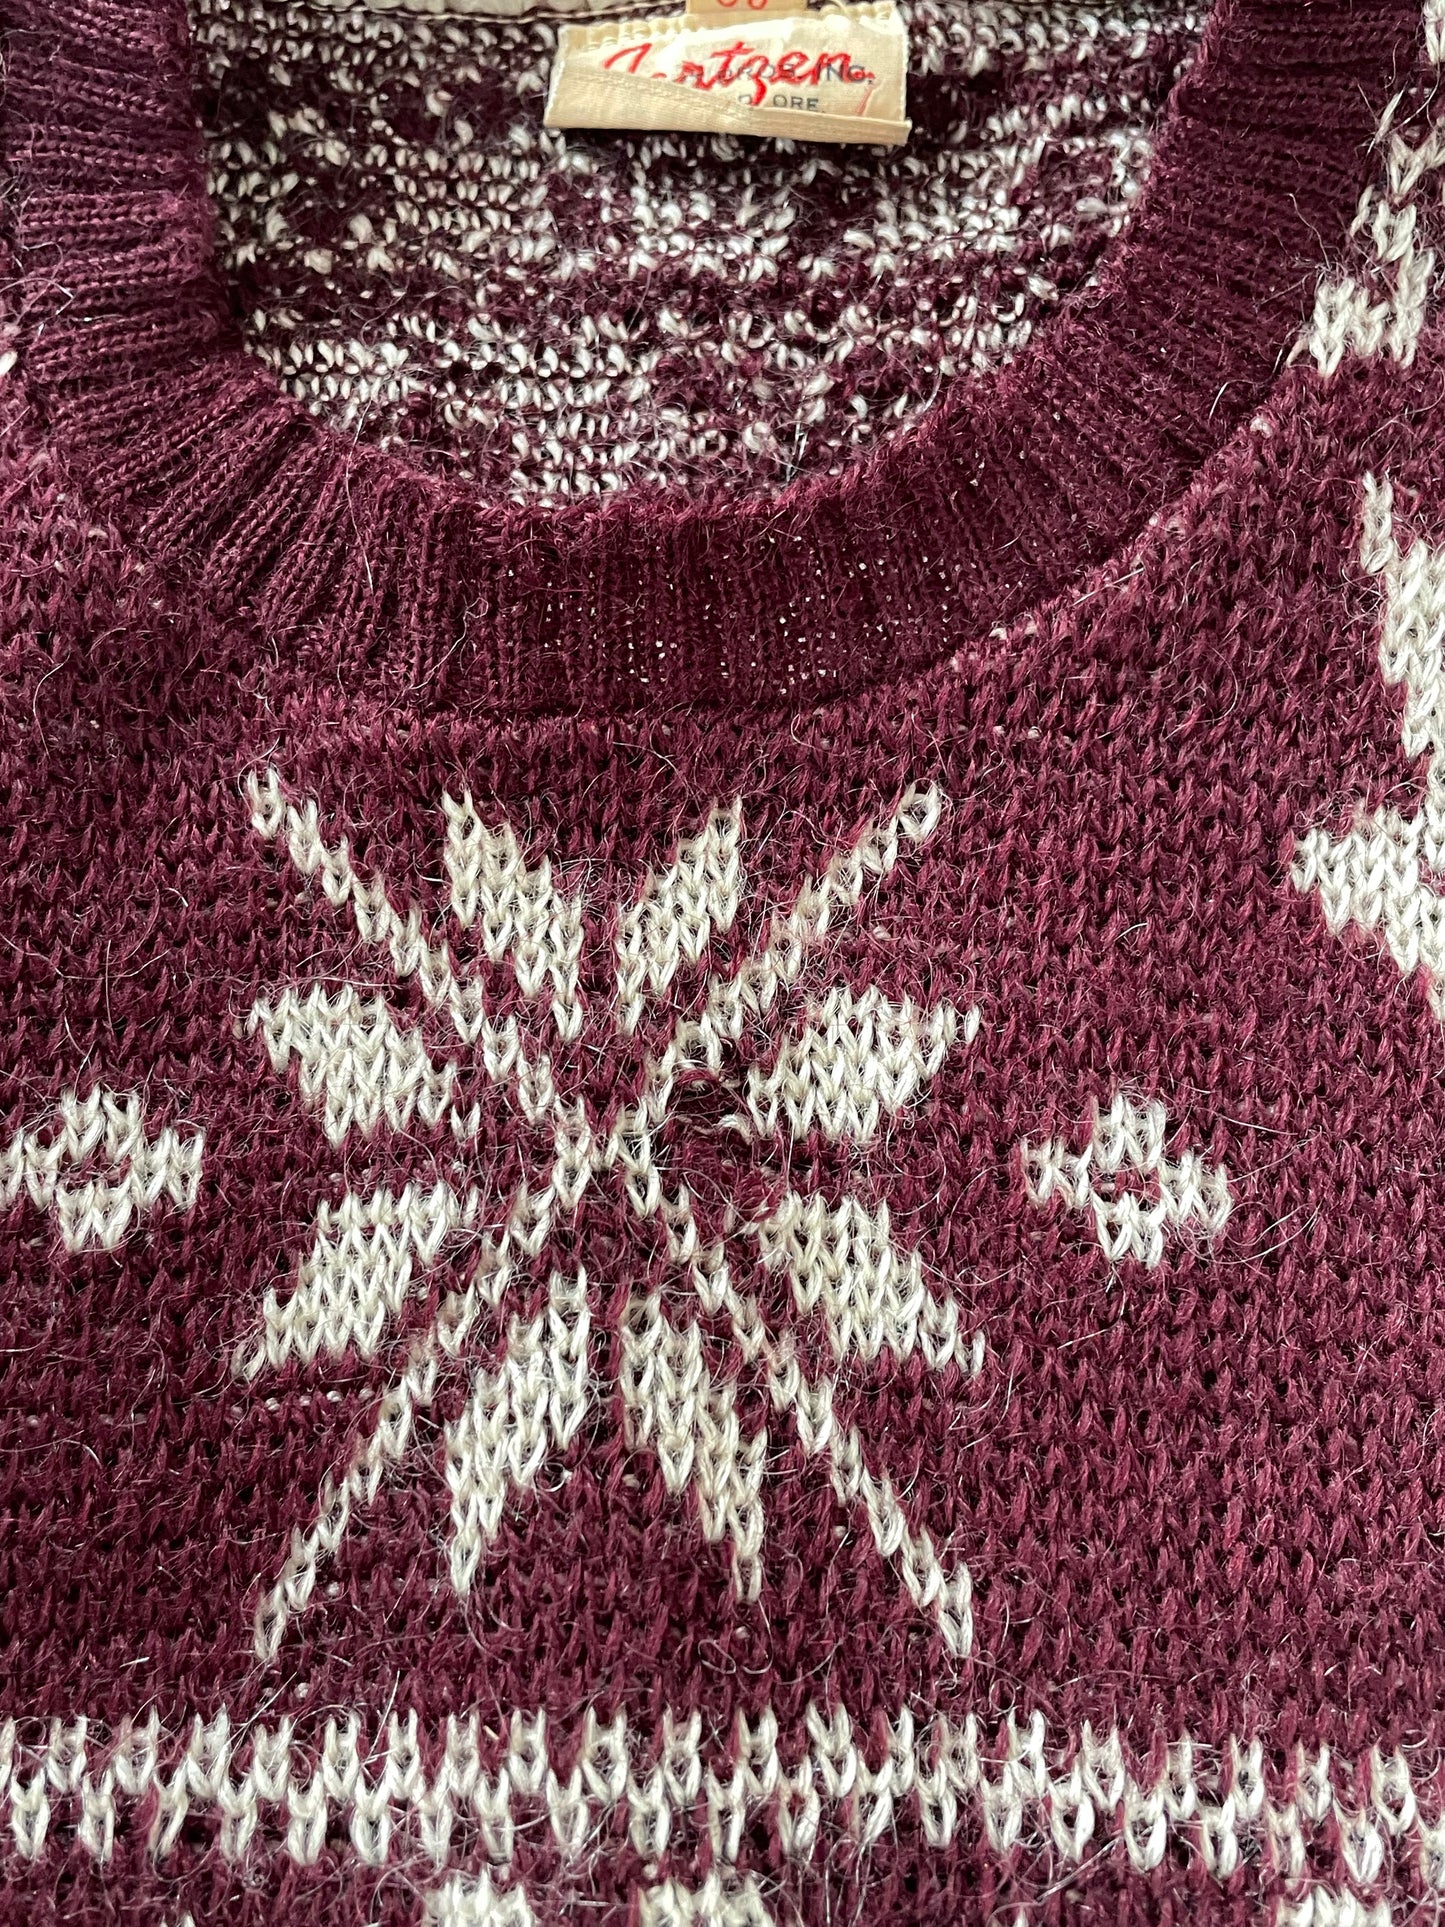 40s Jantzen Holiday Reindeer Sweater